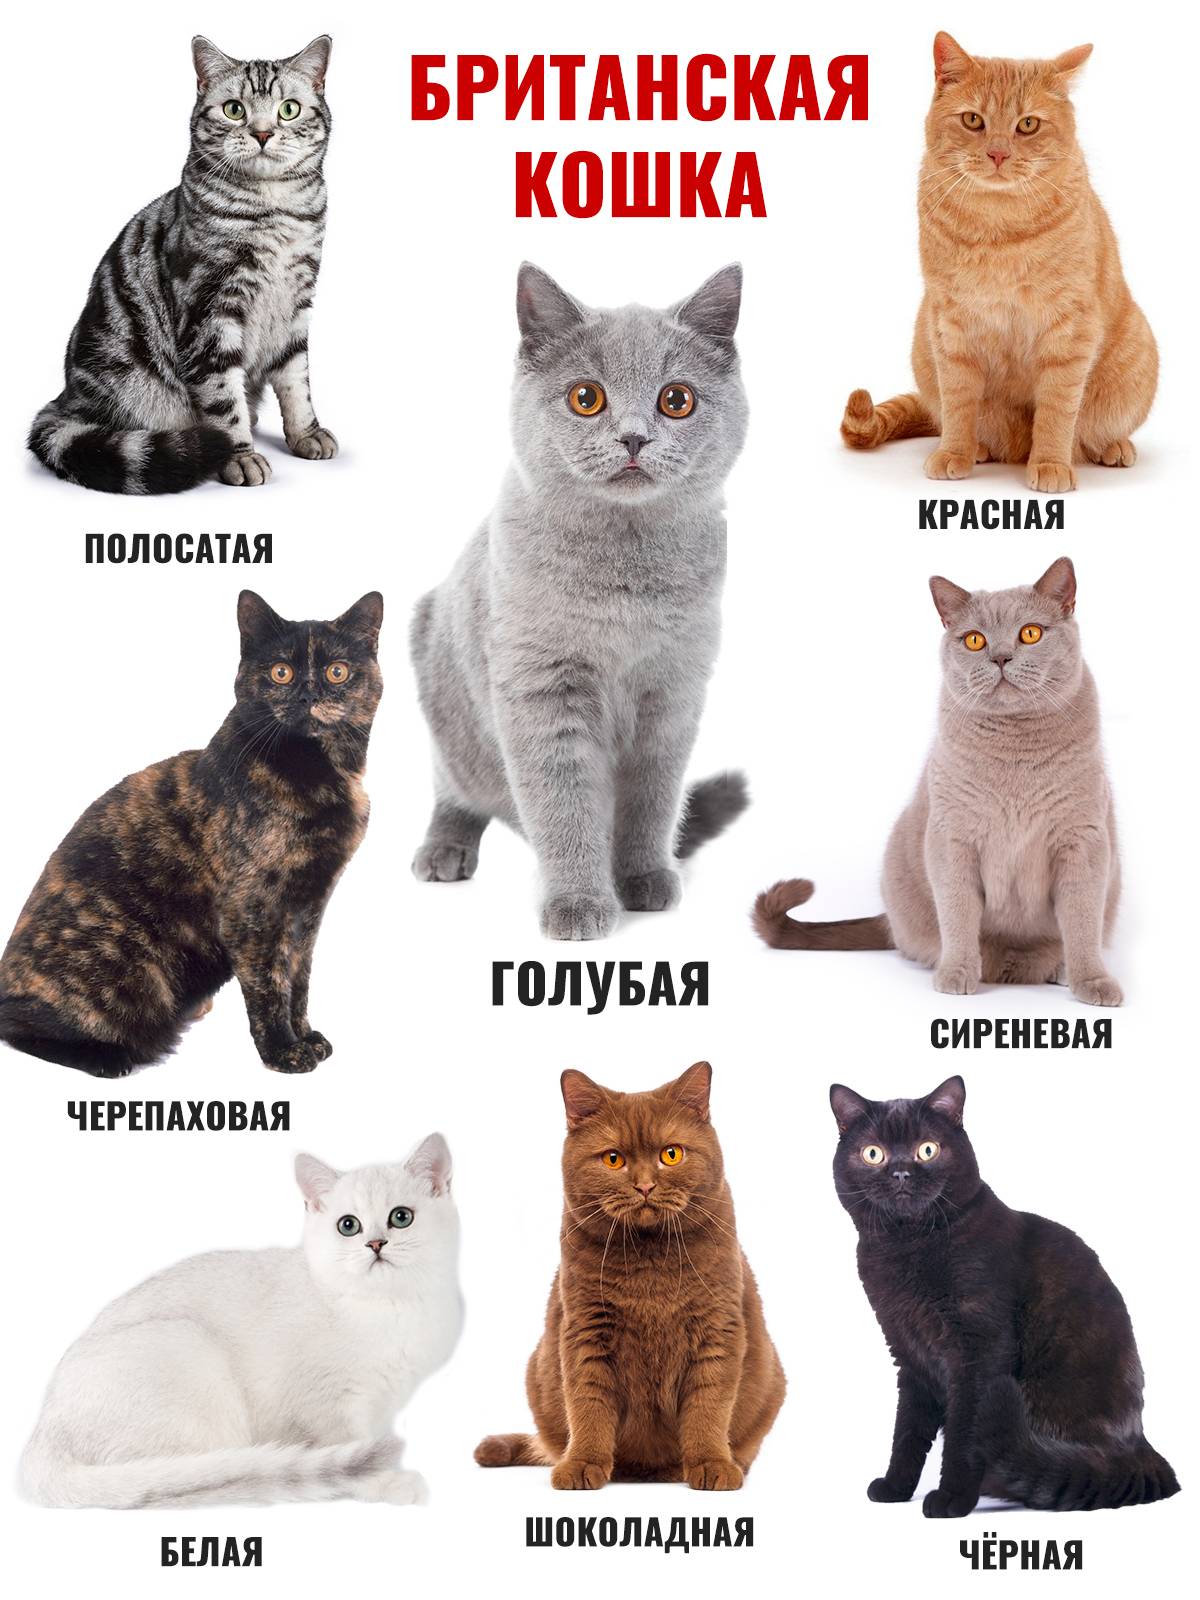 Какие существуют варианты расцветок у британских котов: описание всех видов